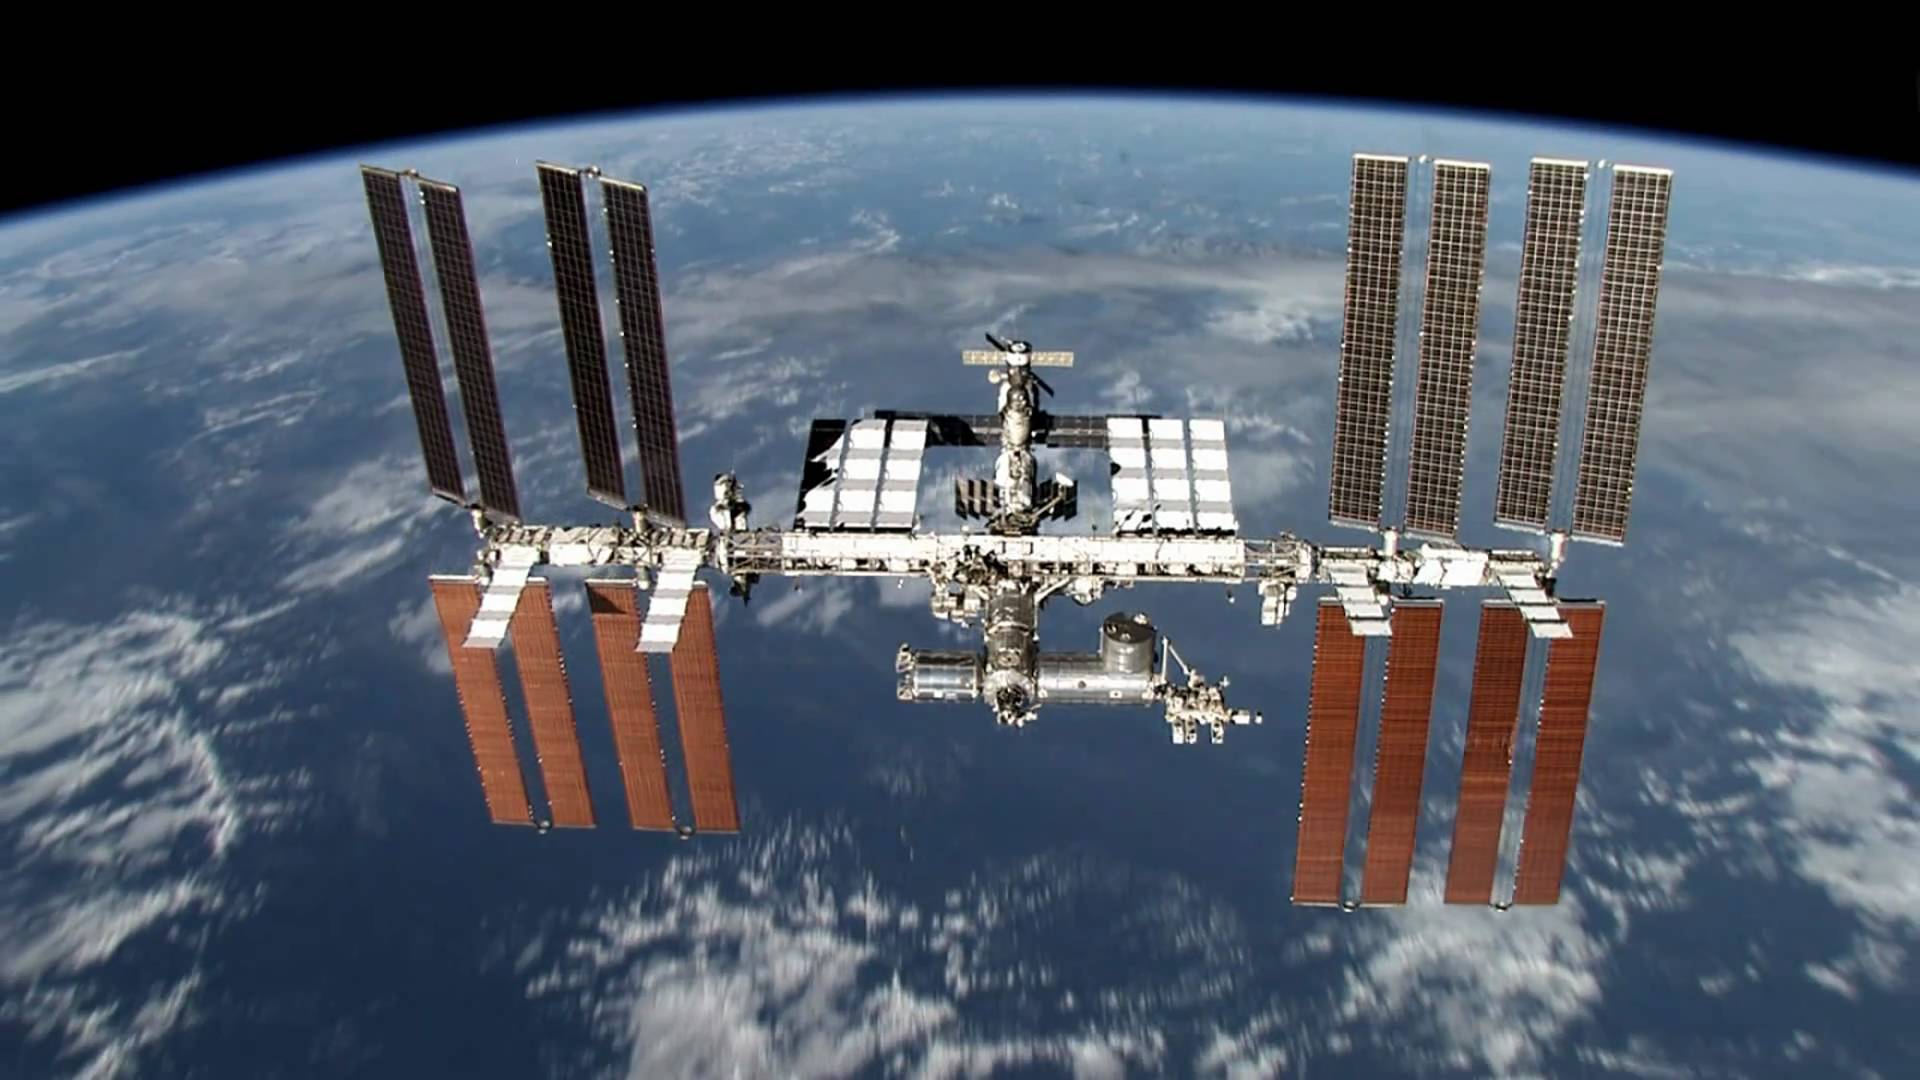 Σοβιετικός διαστημικός σταθμός του 1972 θα συντριβεί στη Γη.